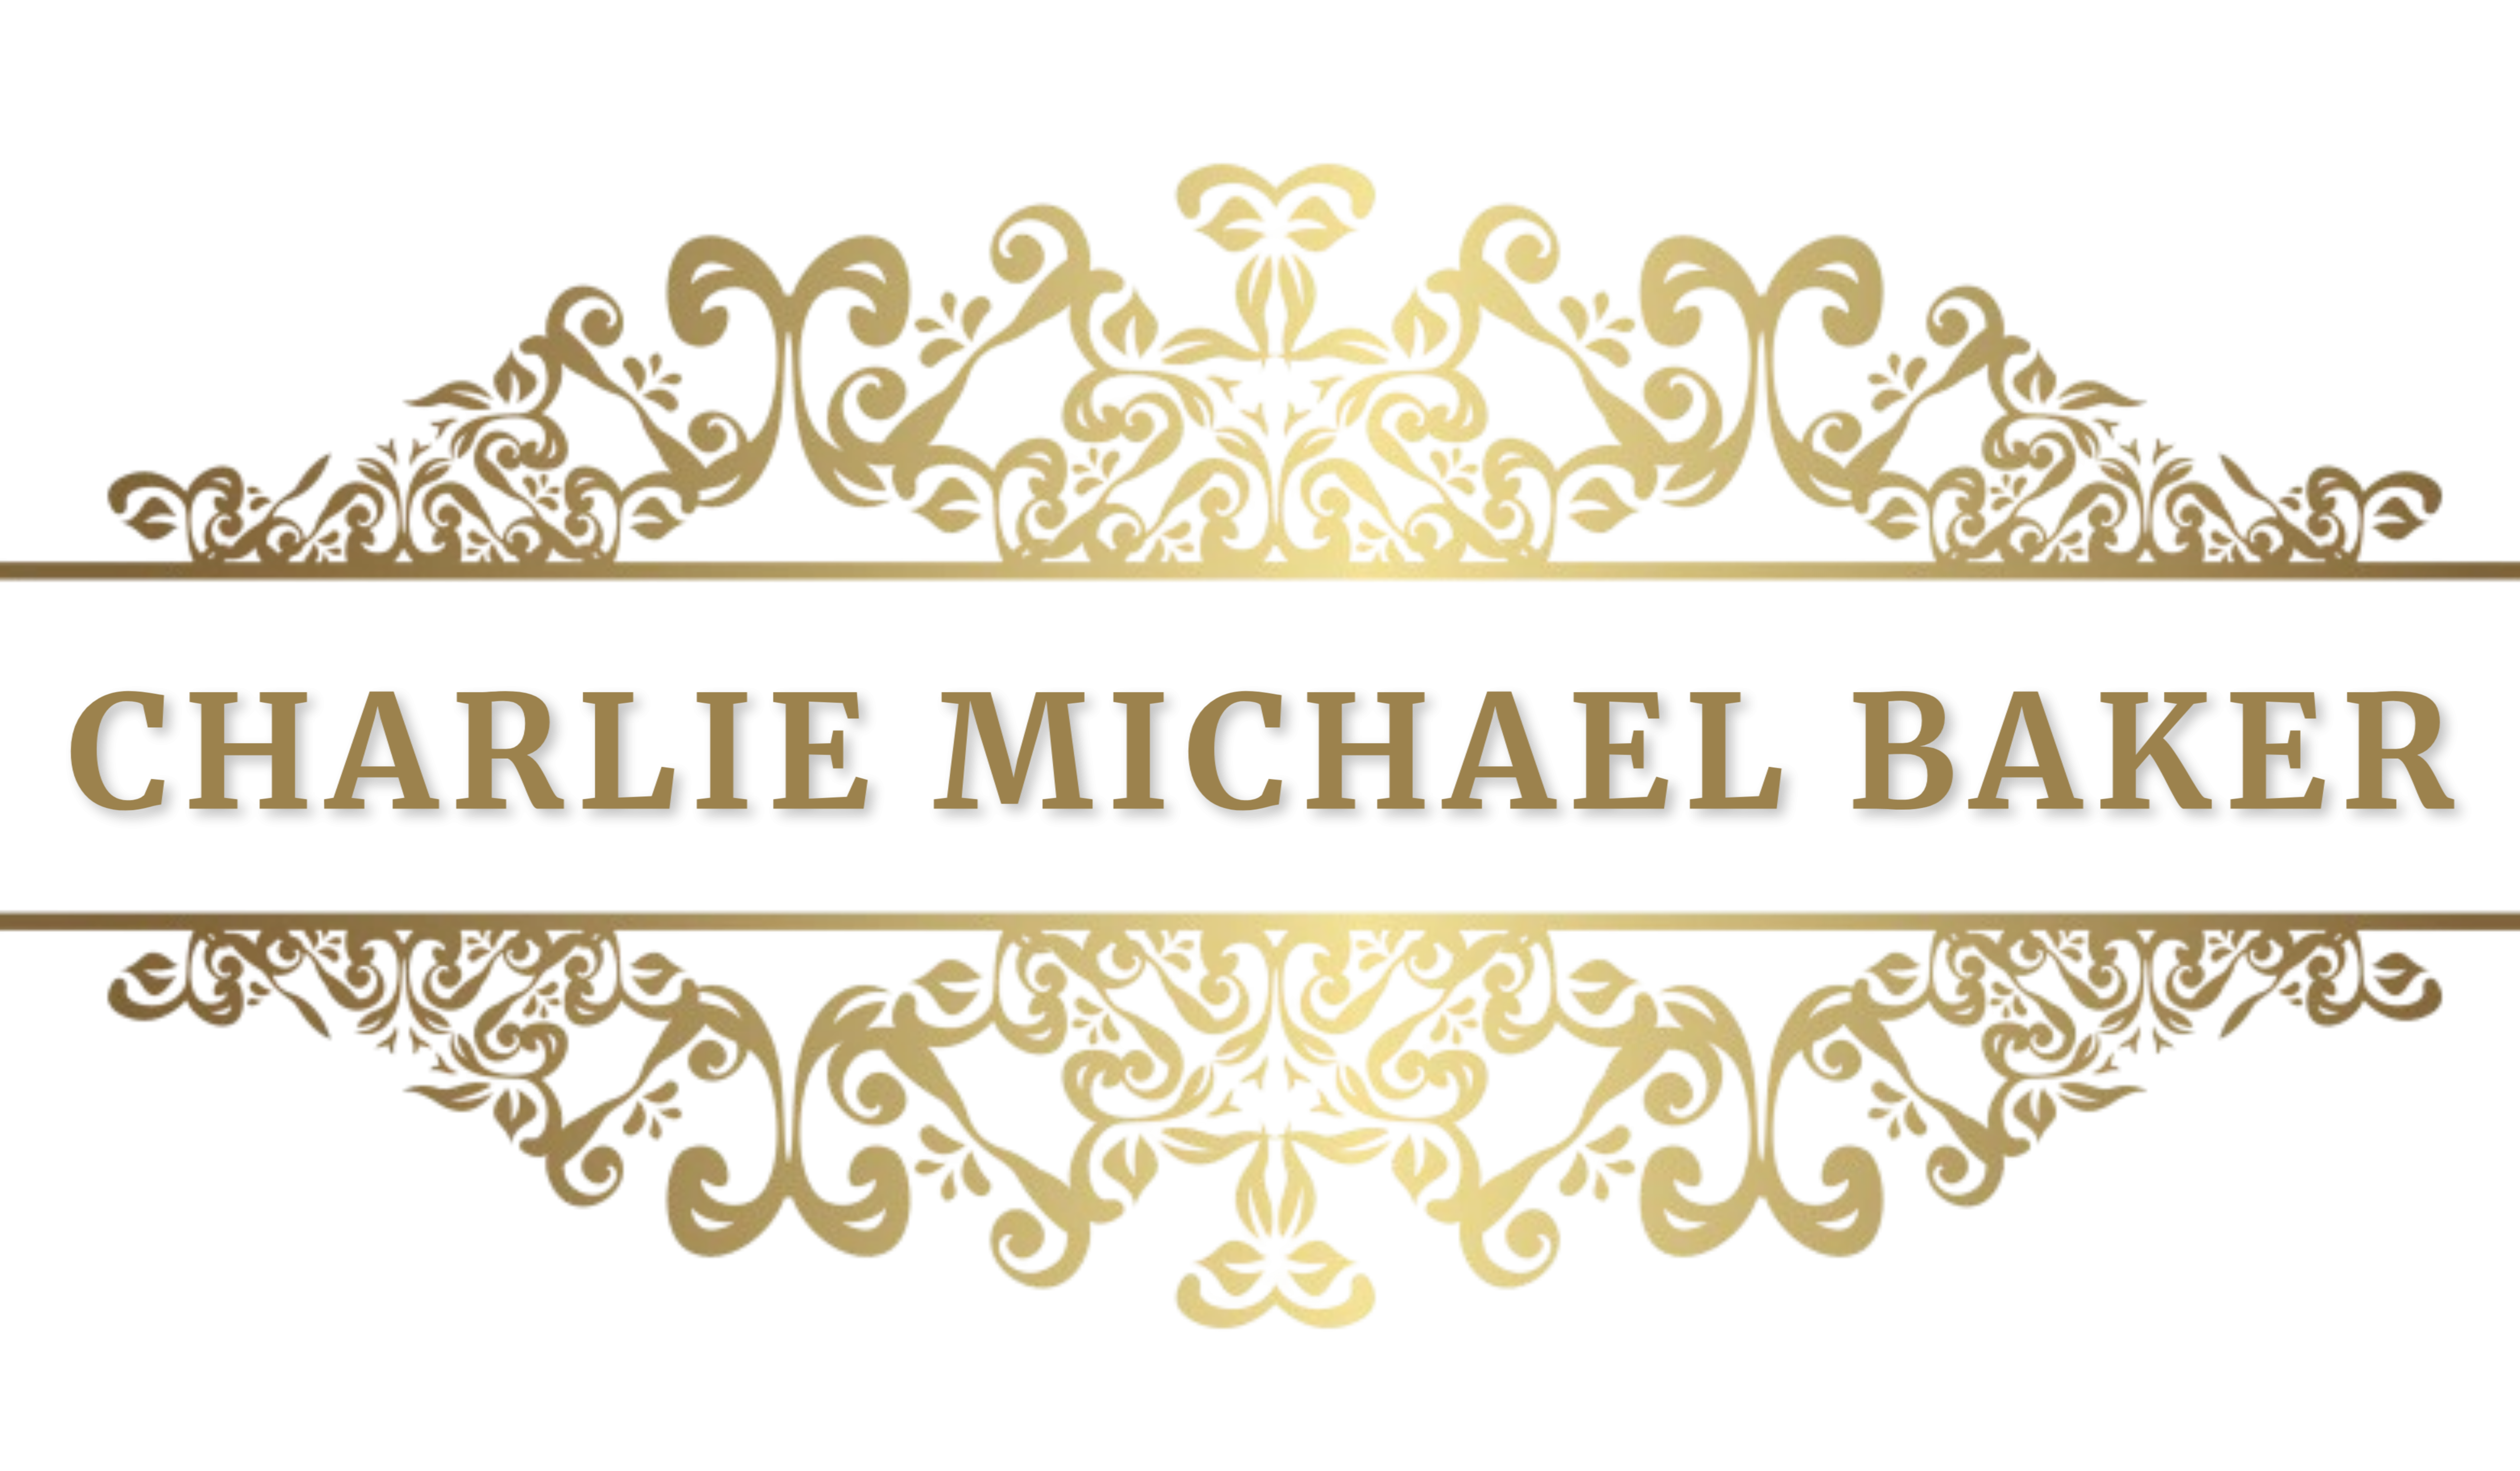 Charlie Michael Baker